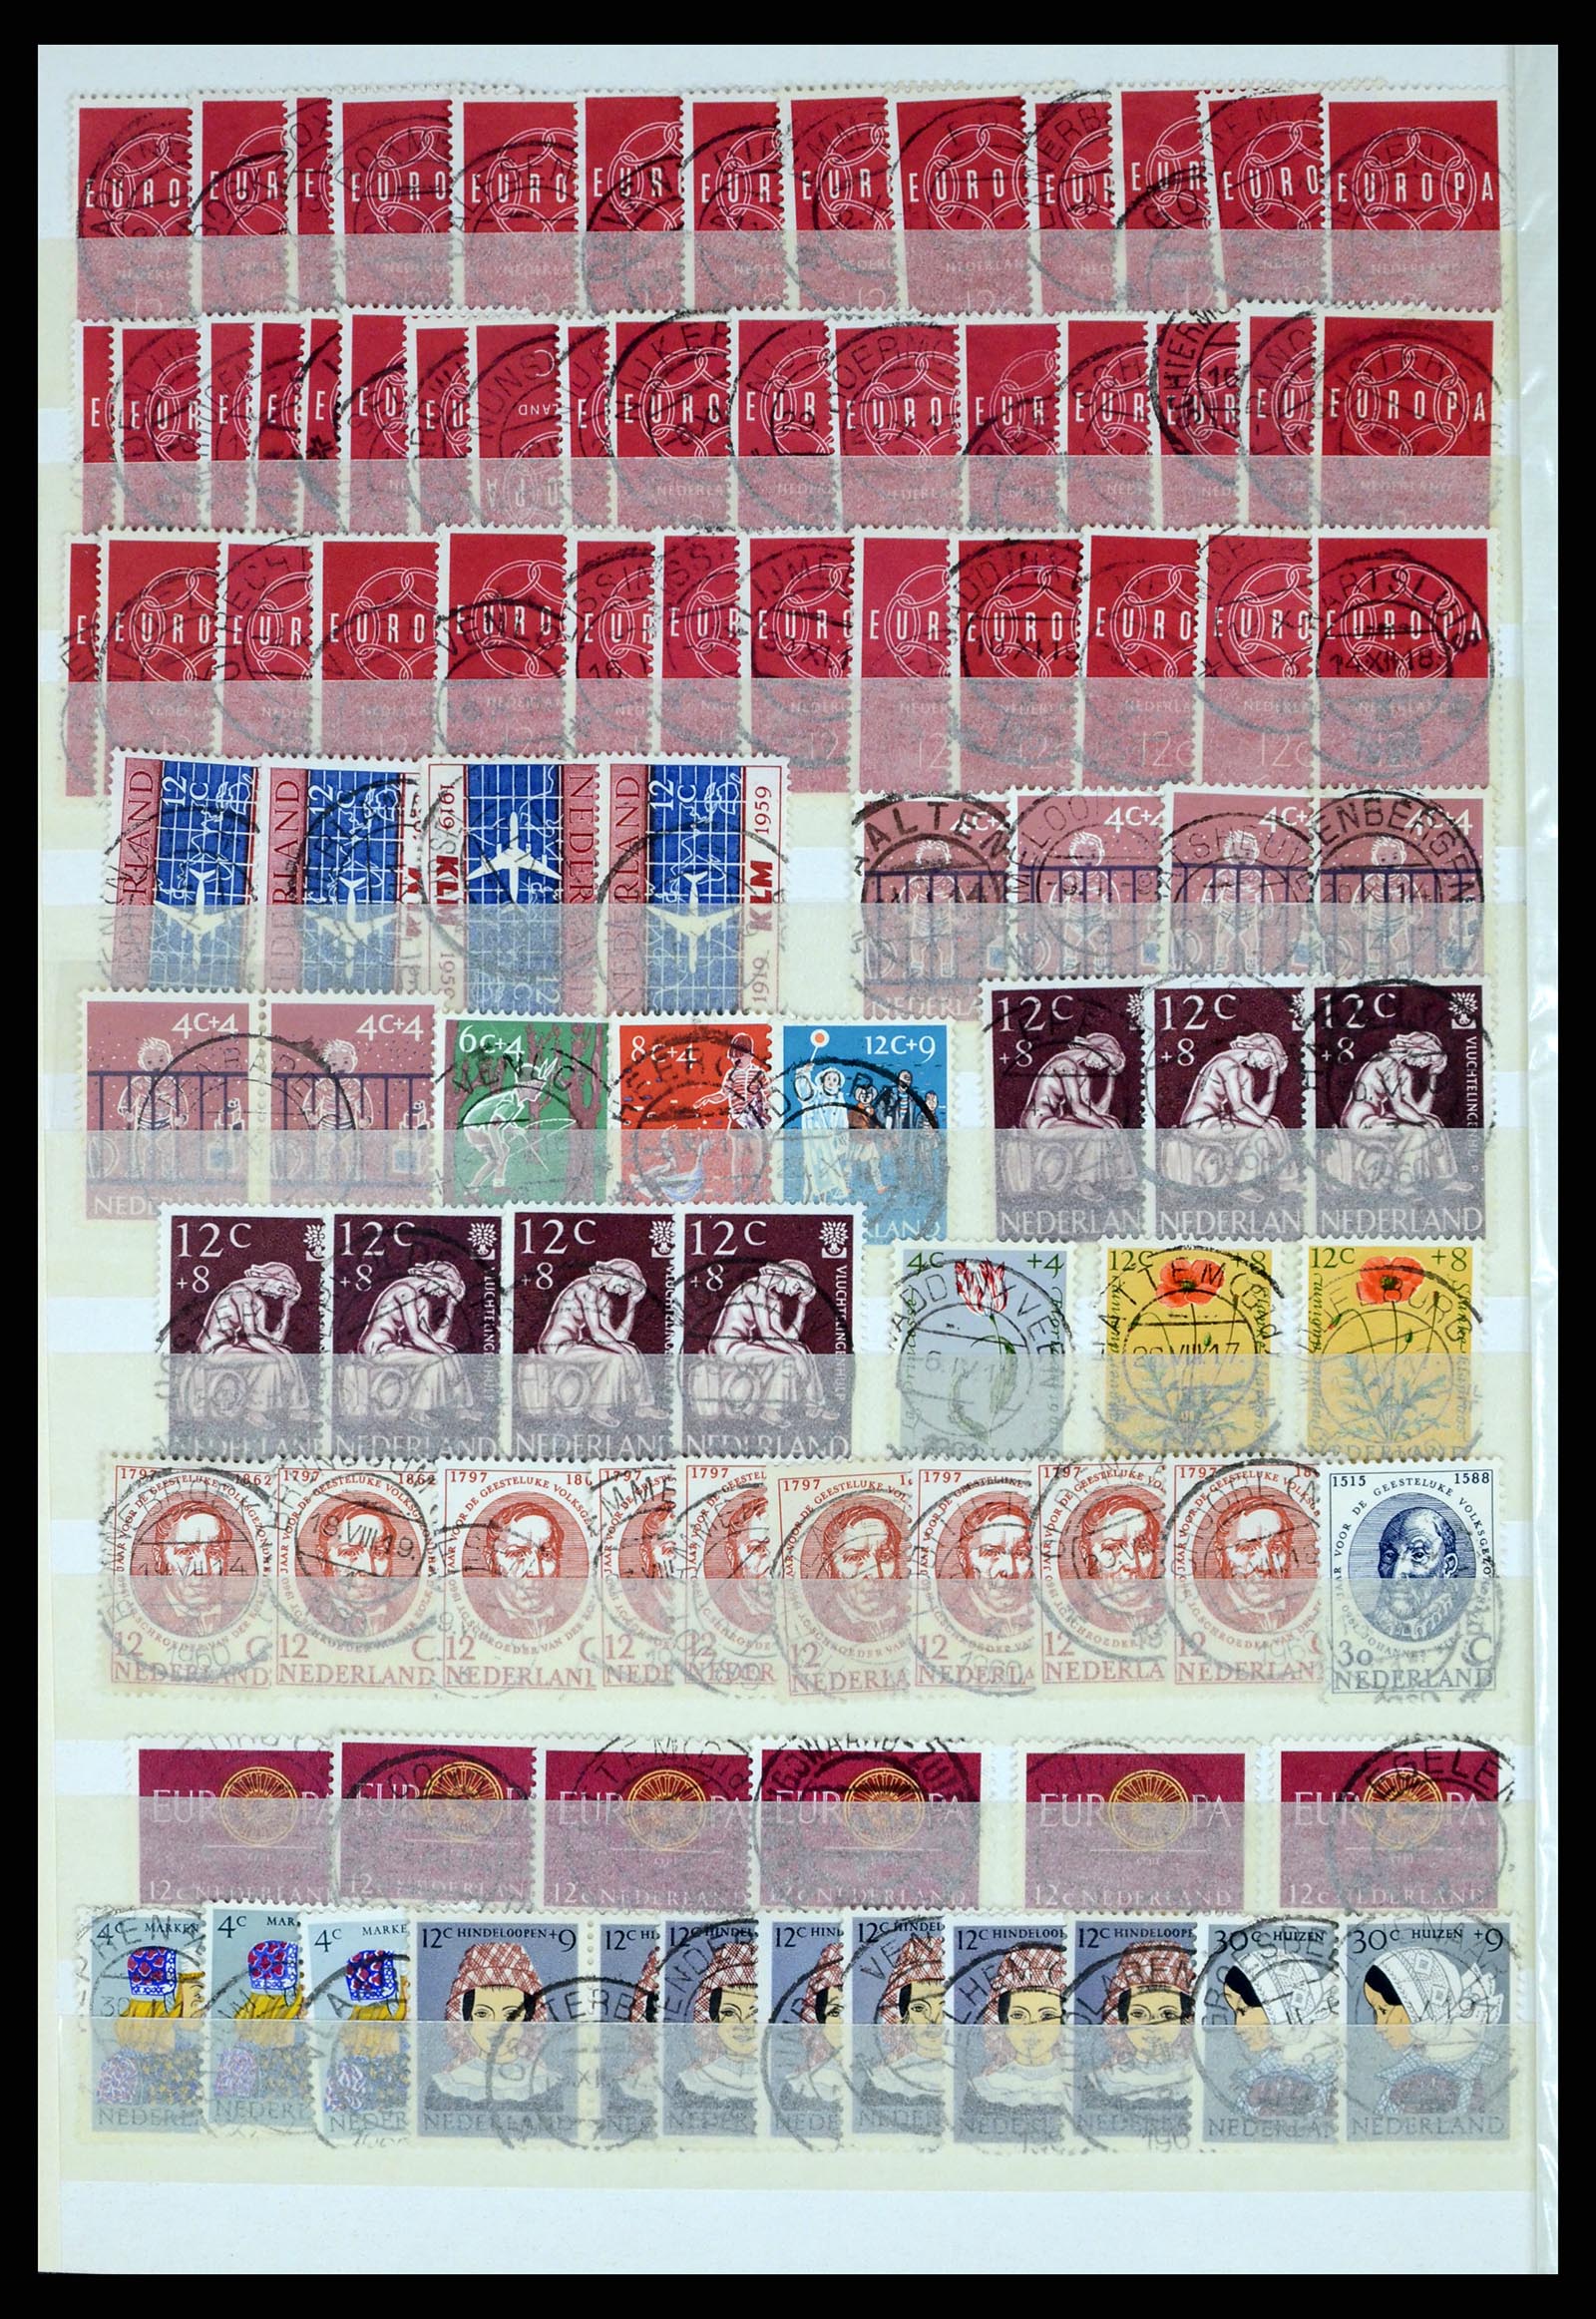 37424 054 - Postzegelverzameling 37424 Nederland kortebalk stempels.